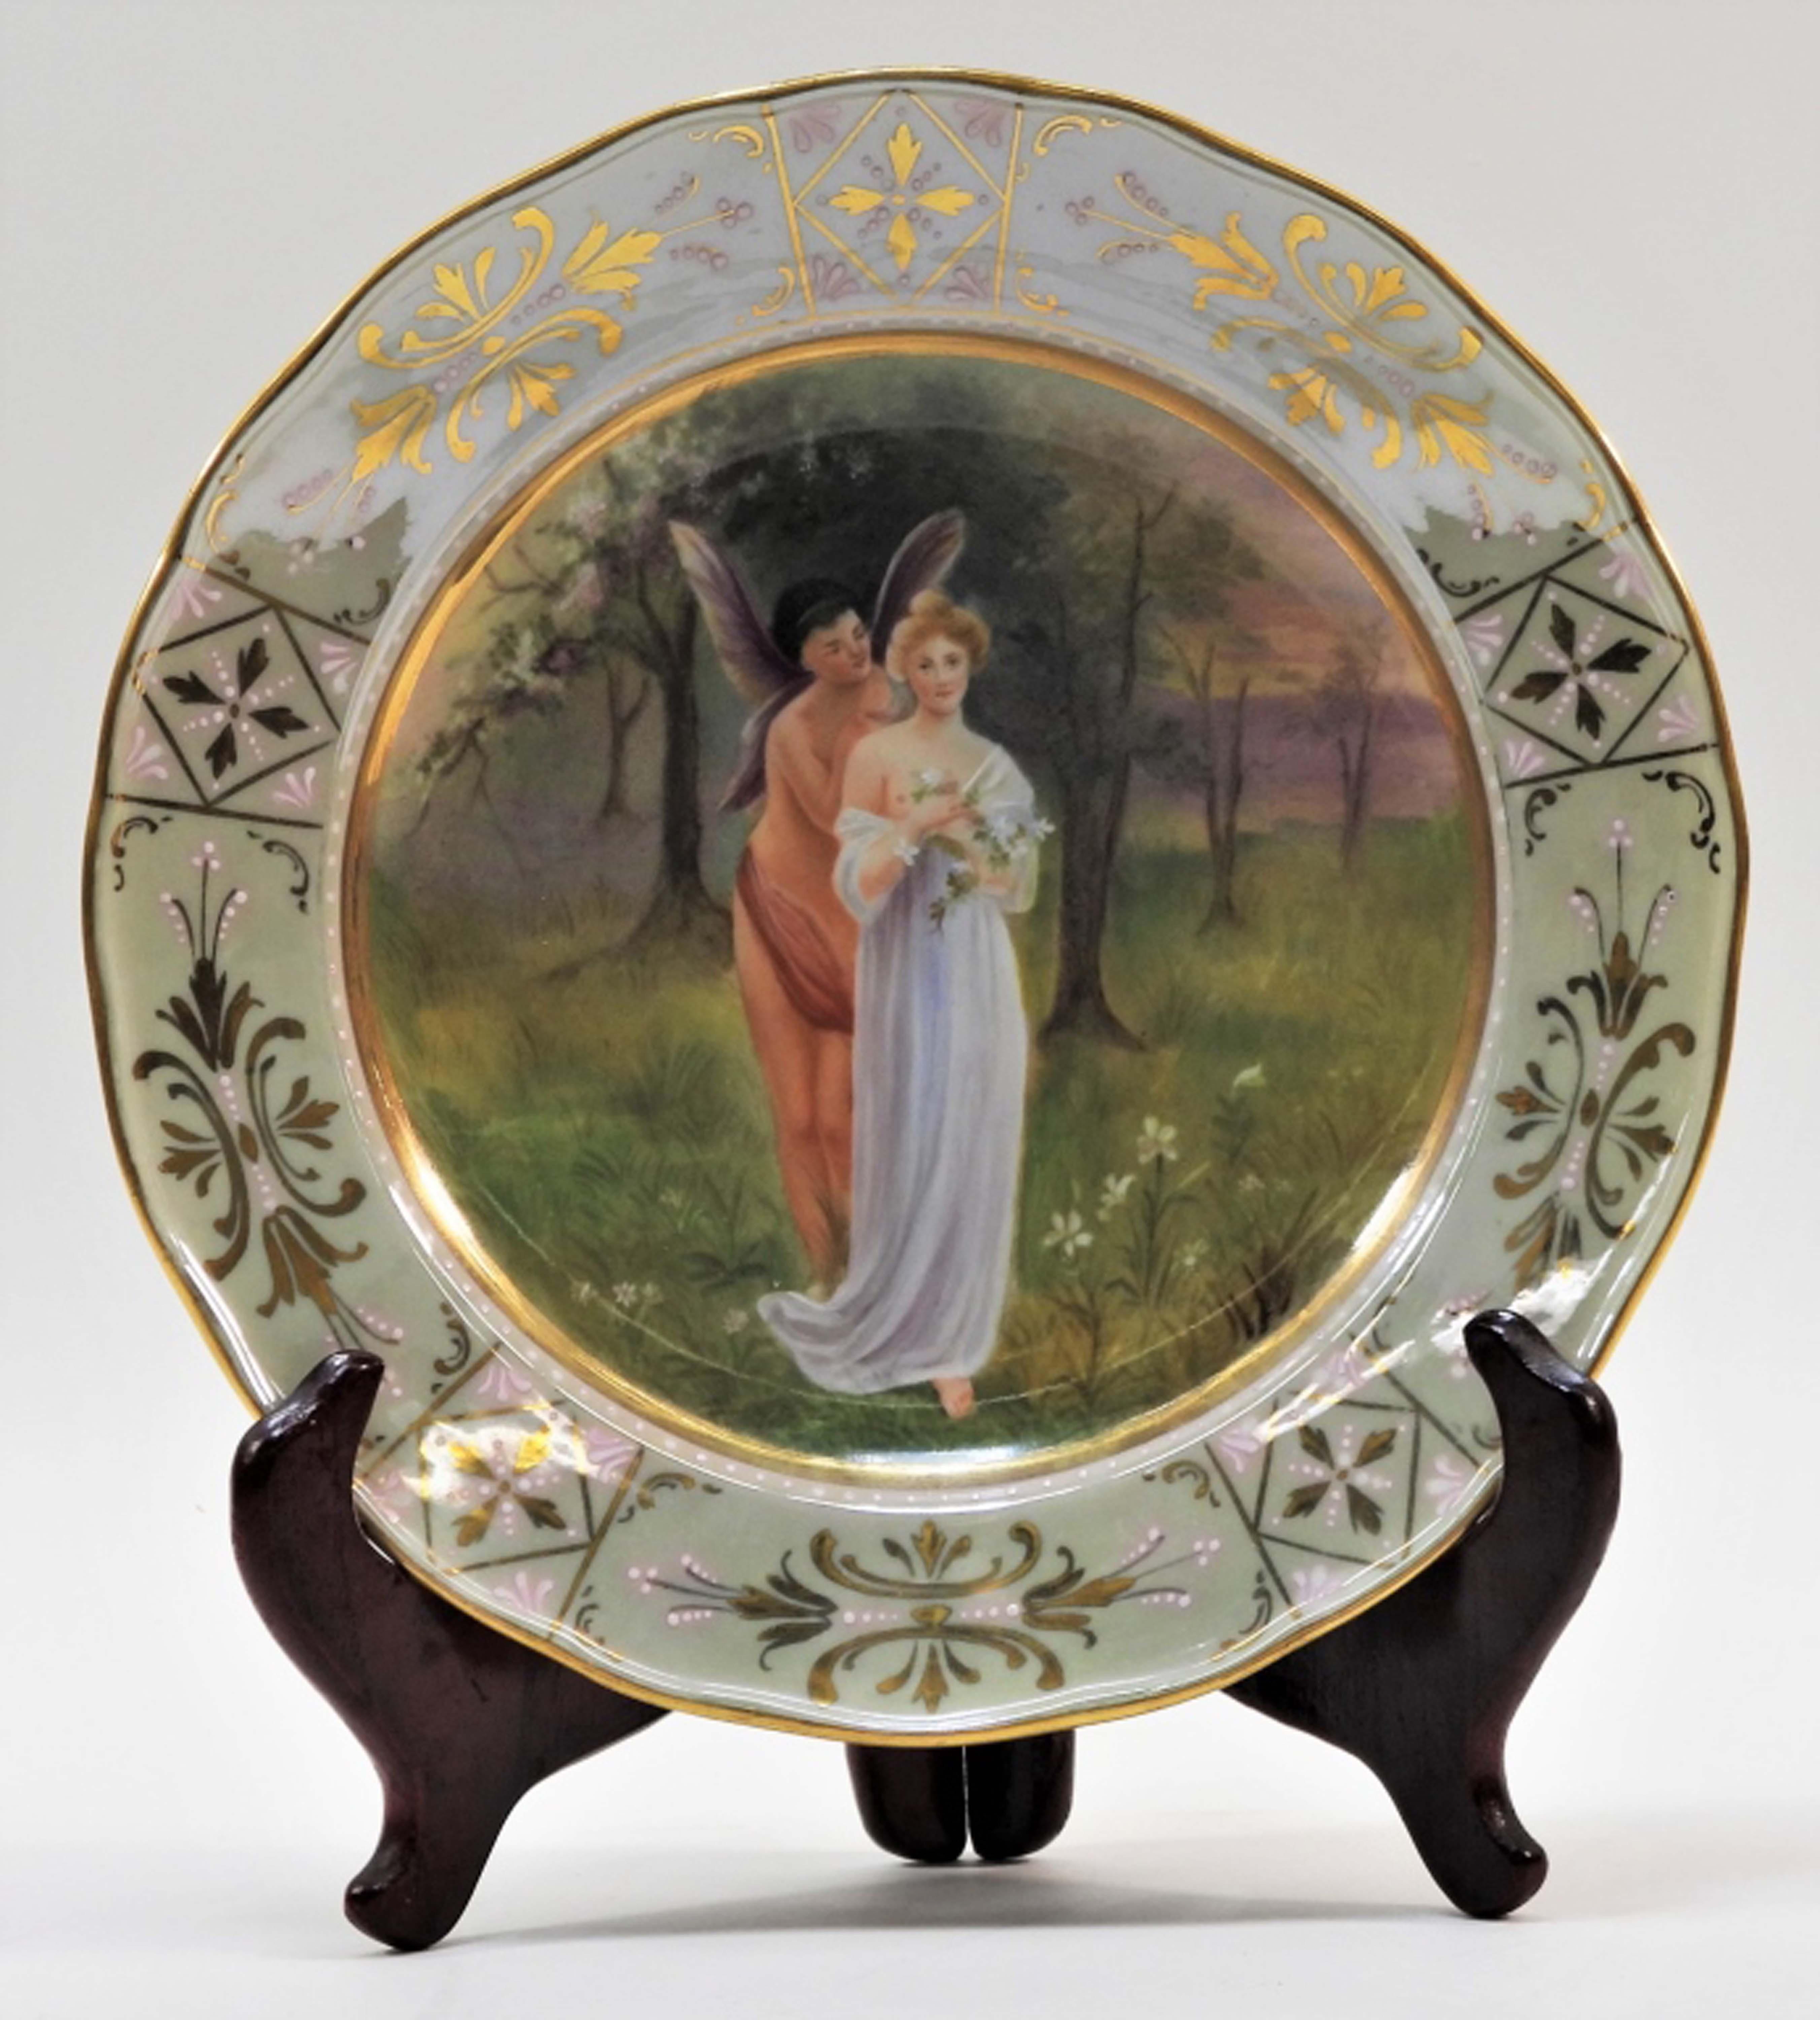 German Meissen porcelain plate, est. $300-$500